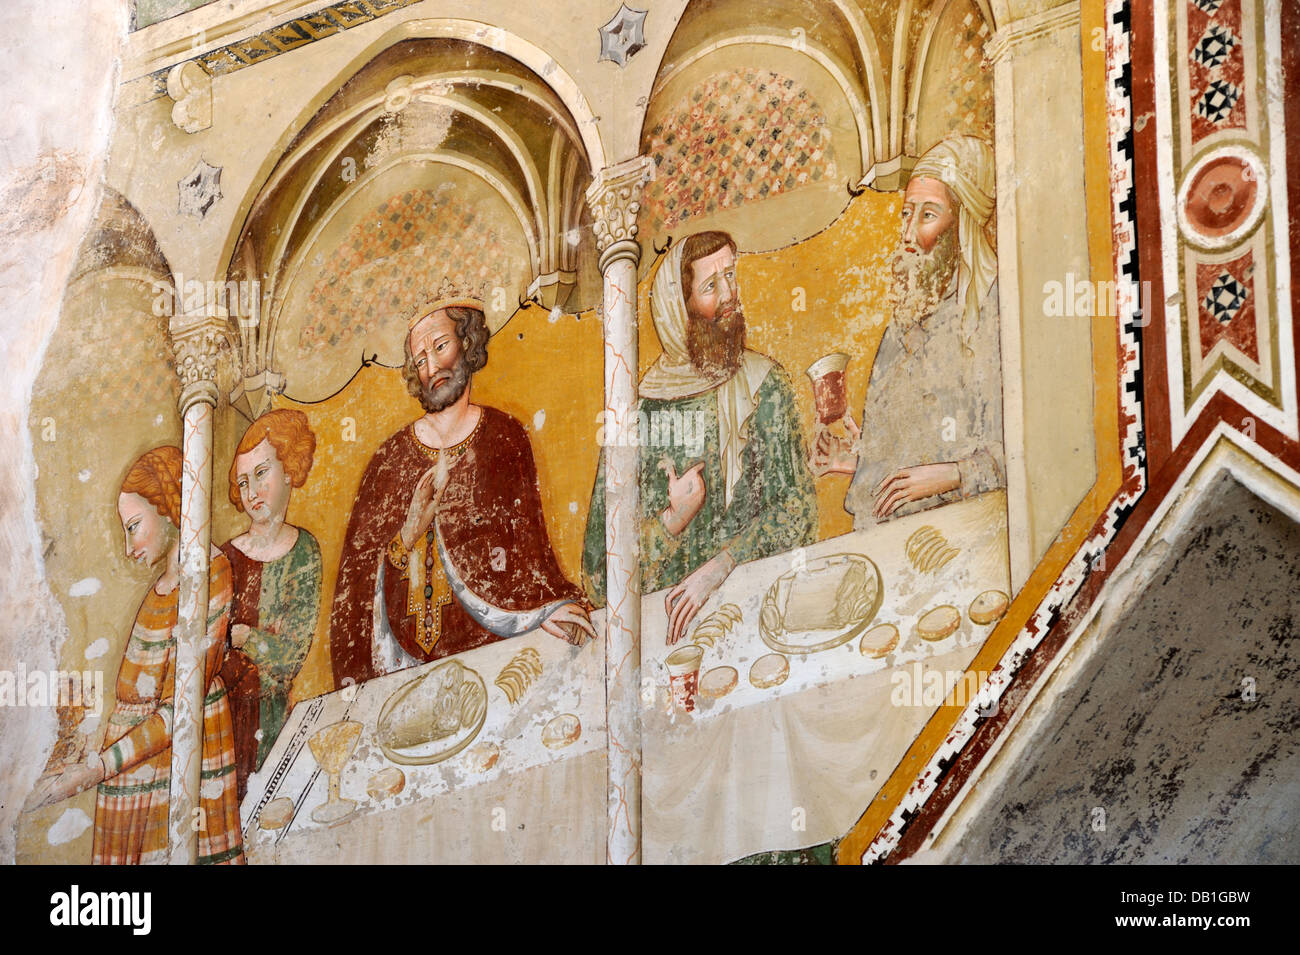 Italie, Ombrie, Todi, église de San Fortunato, 5e chapelle à gauche, fresque médiévale du banquet d'Hérode (AD 1340) Banque D'Images